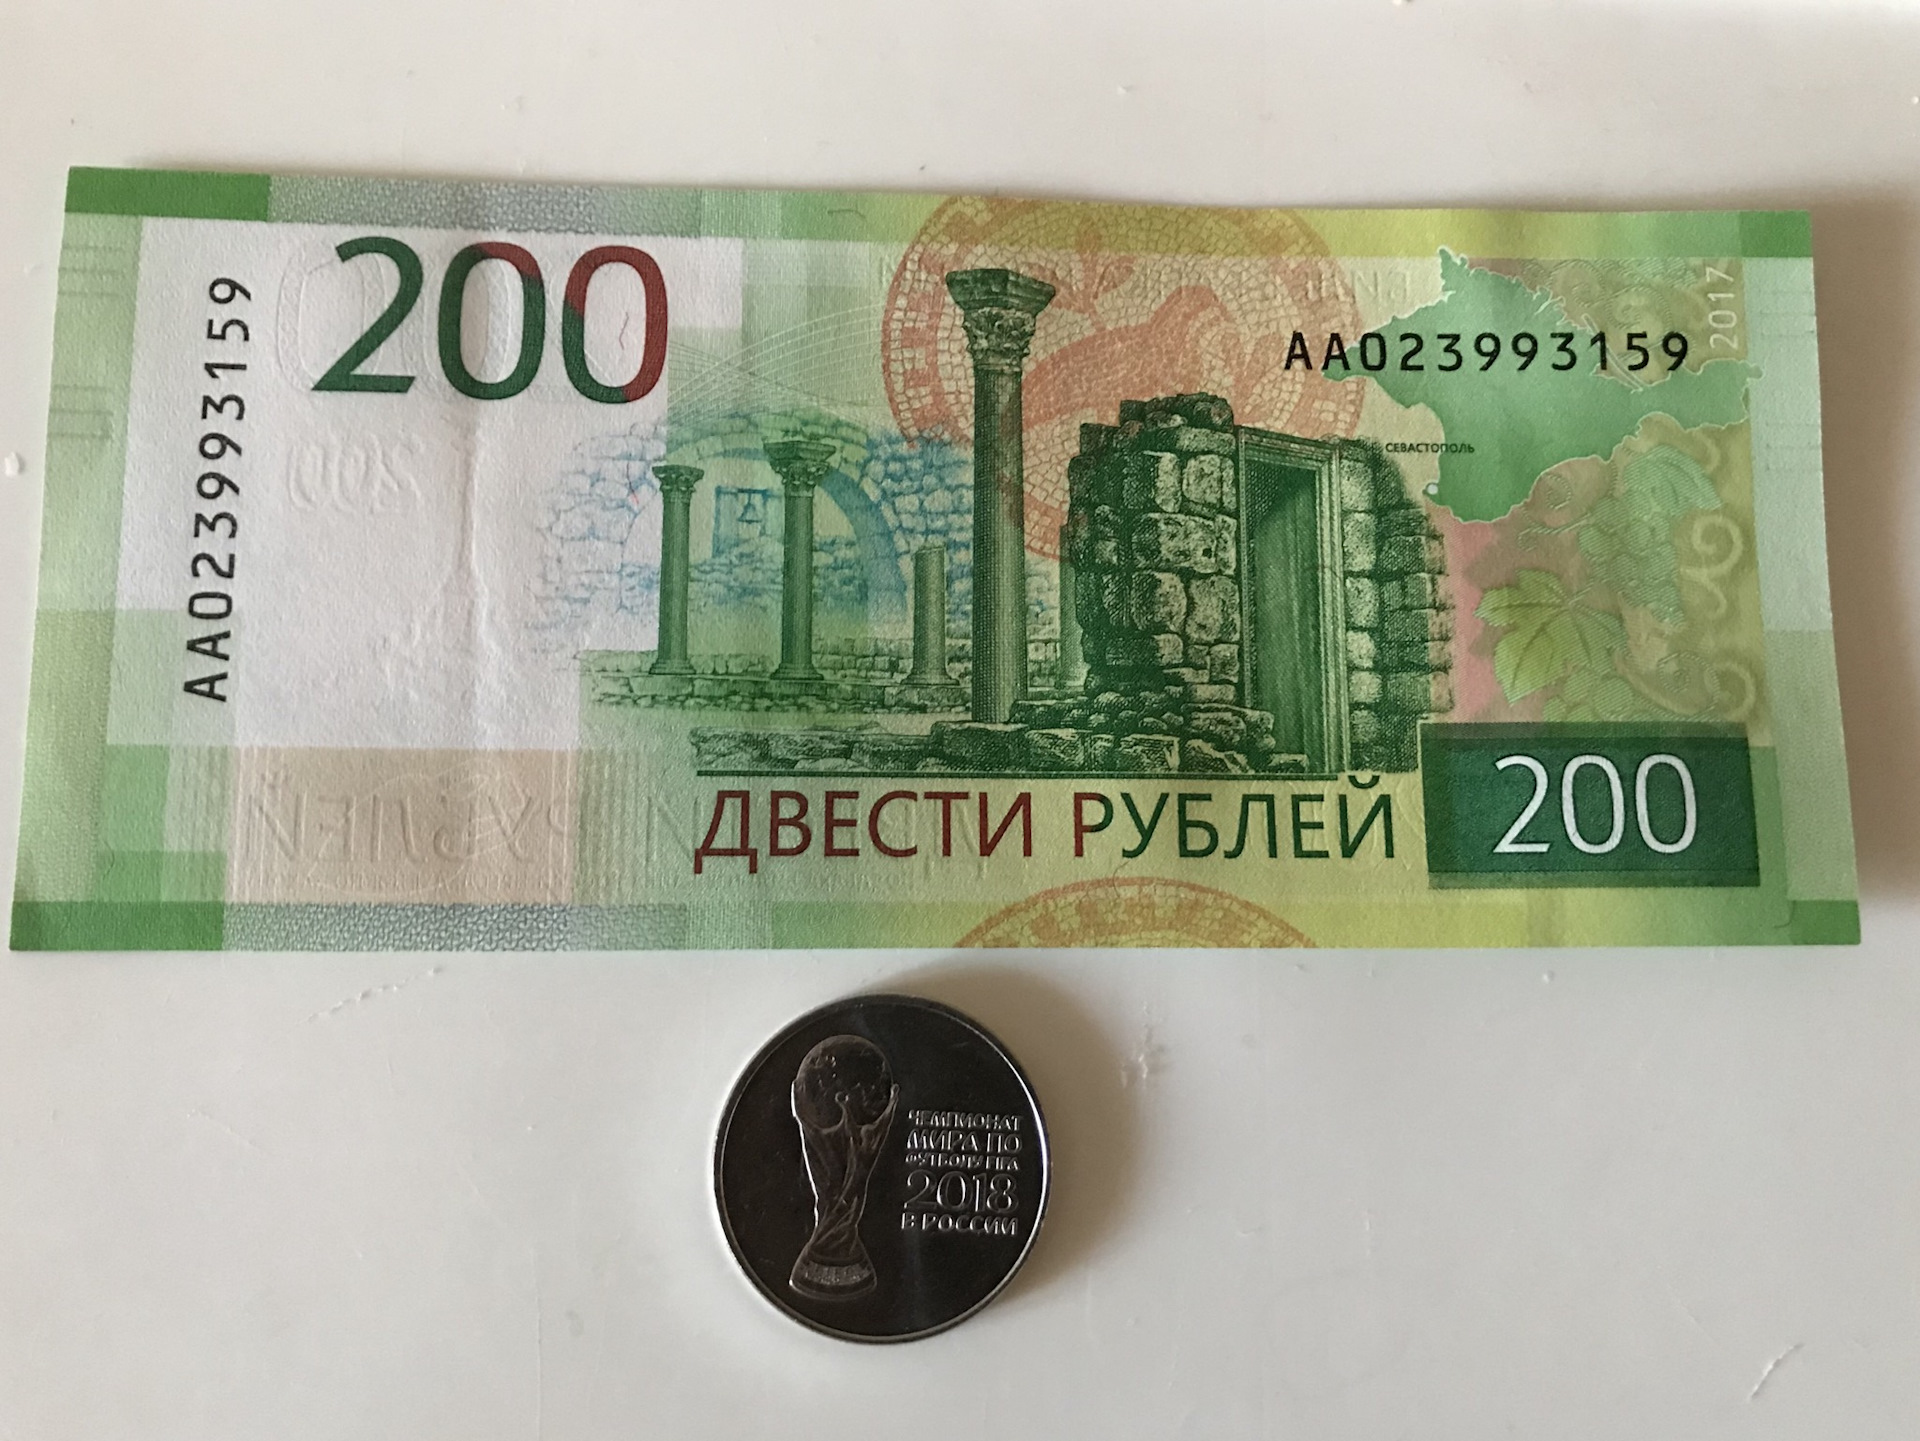 200 рублей метр. 200 Рублей. 200 Рублей юбилейные. Двести рублей юбилейные. Памятные 200 руб.